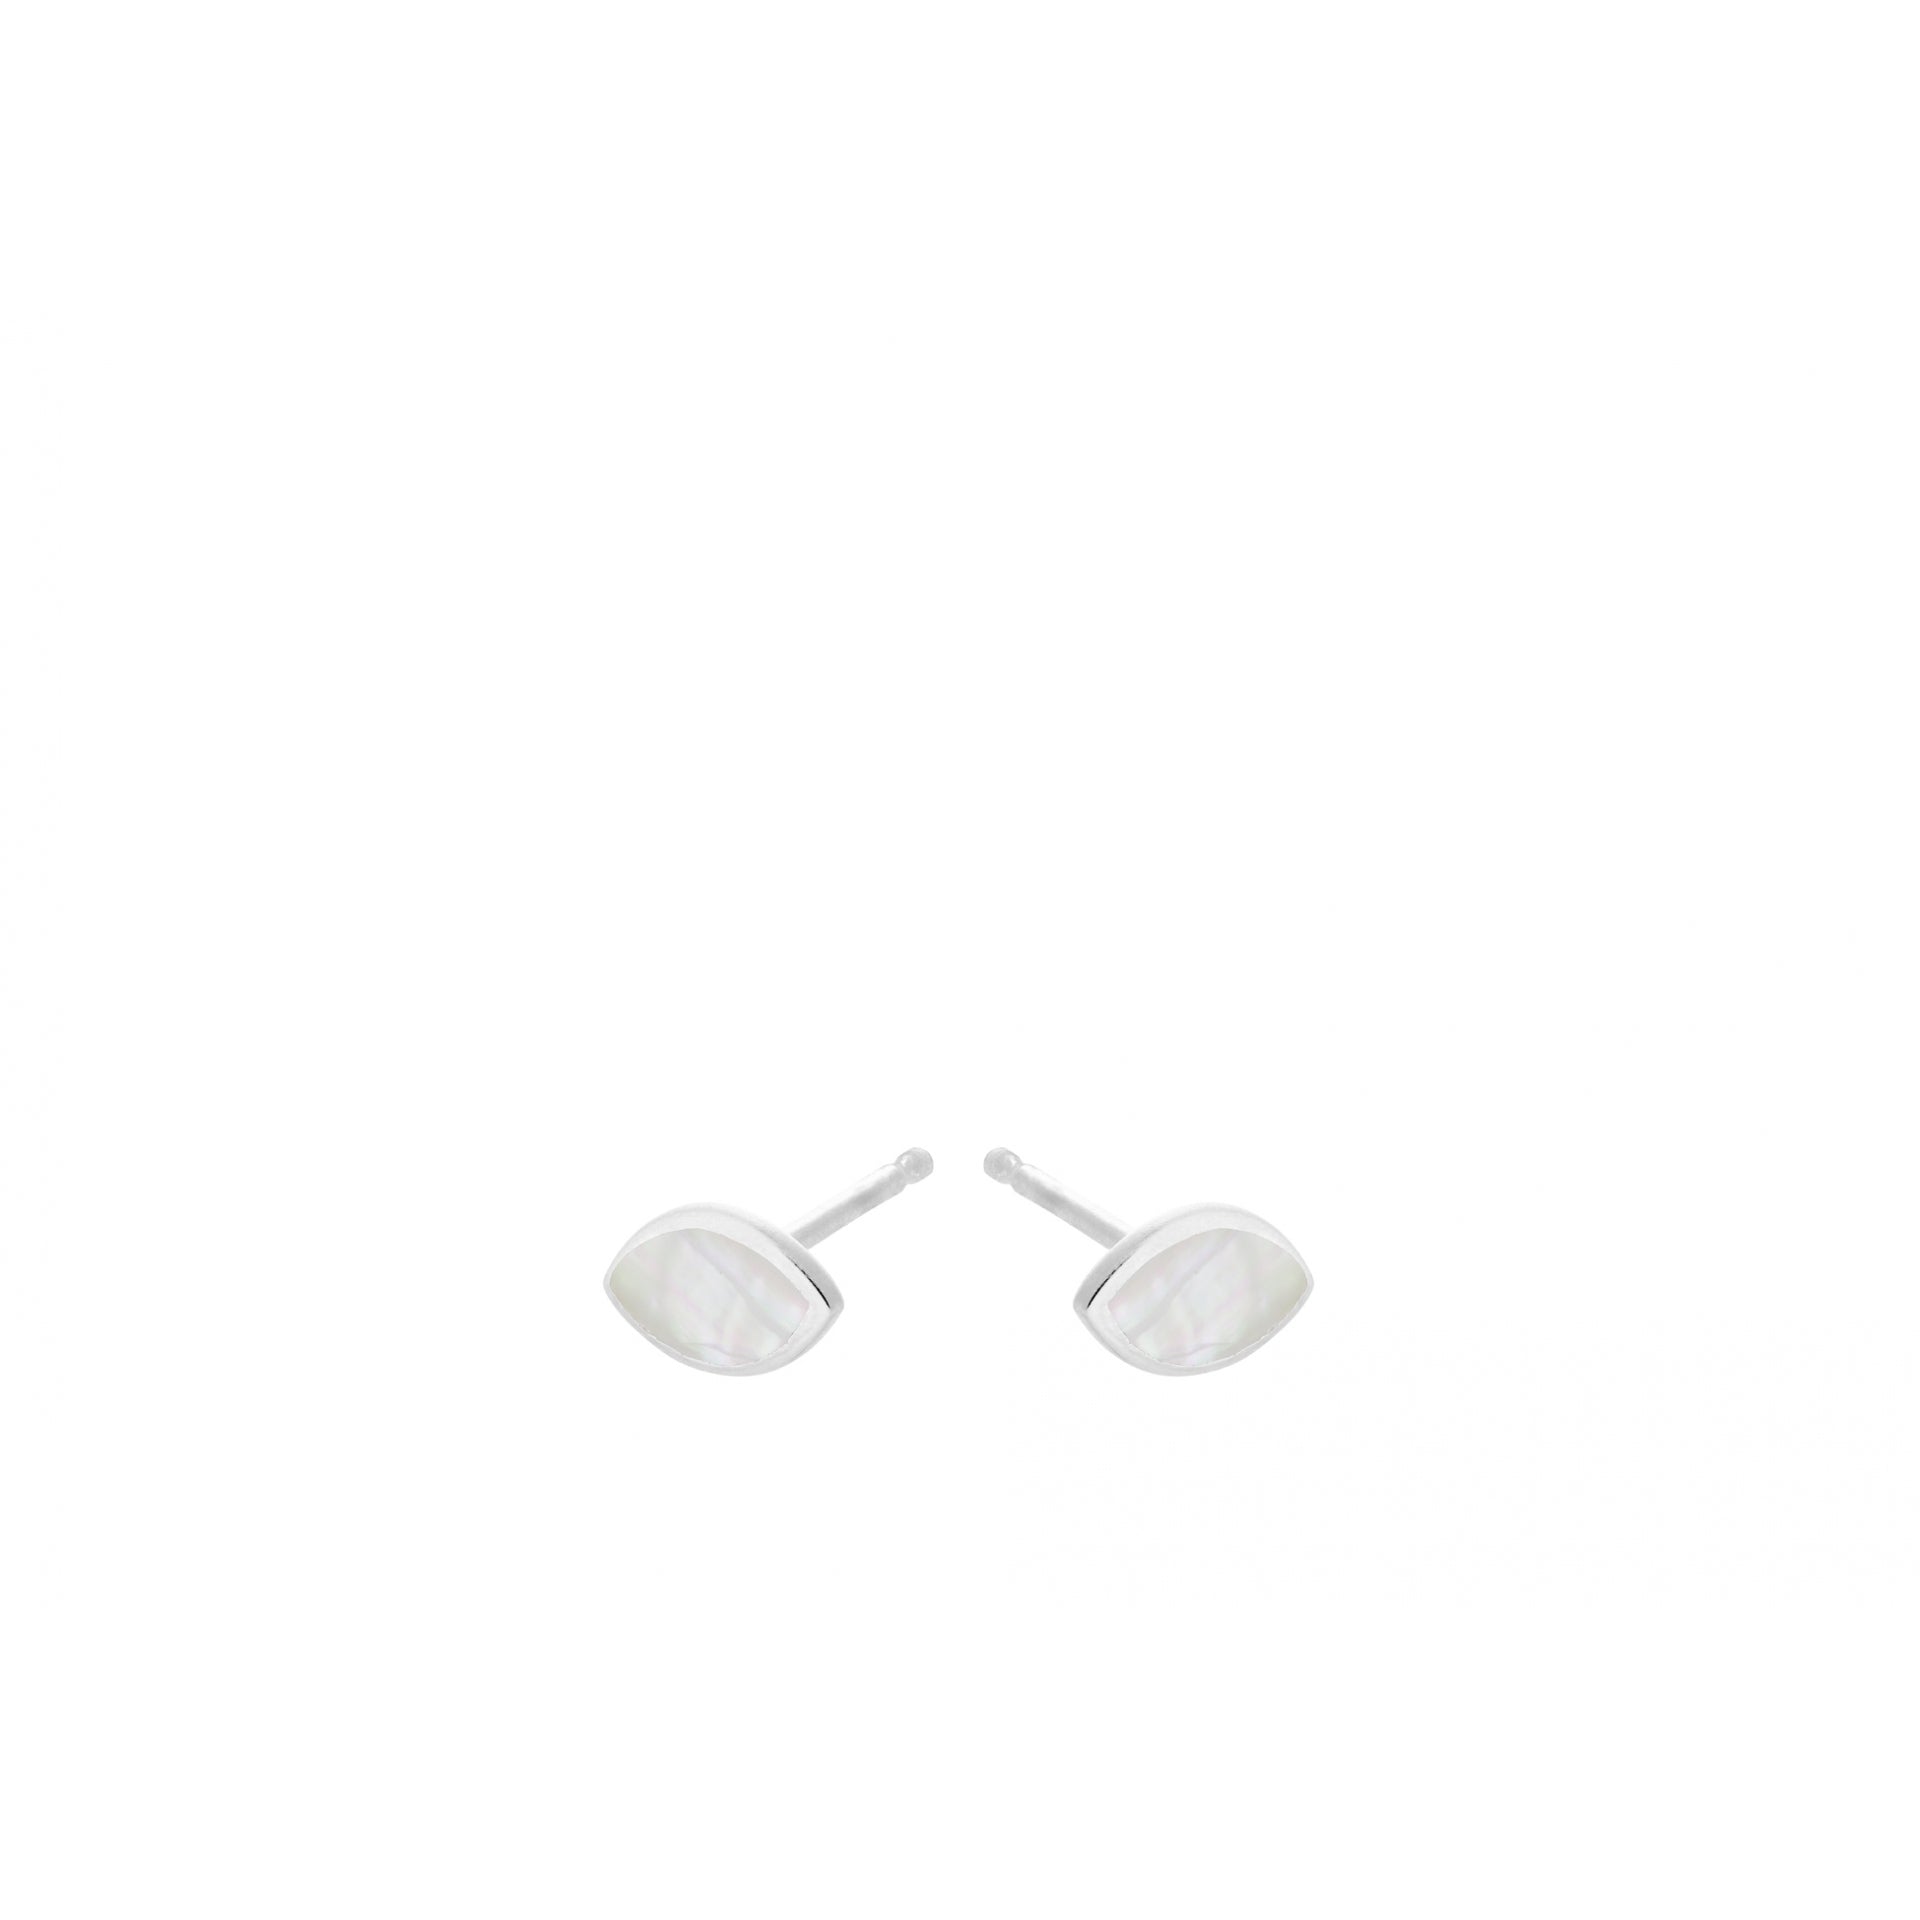 Flake Earsticks Earrings in Silver w. Mother of Pearl